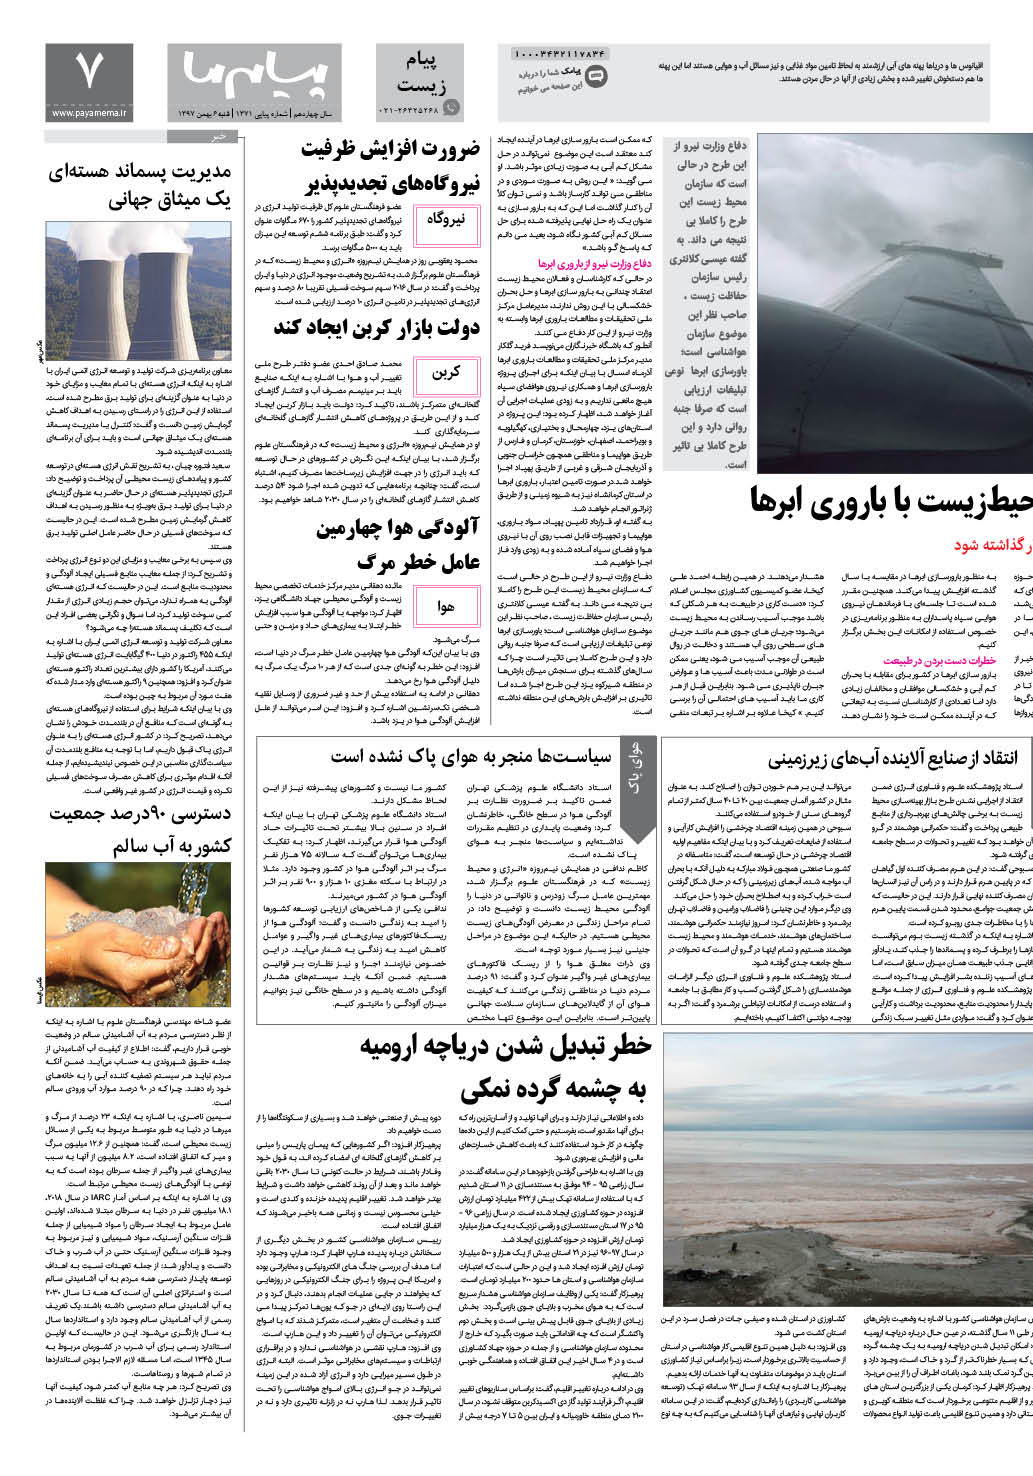 صفحه پیام زیست شماره 1371 روزنامه پیام ما